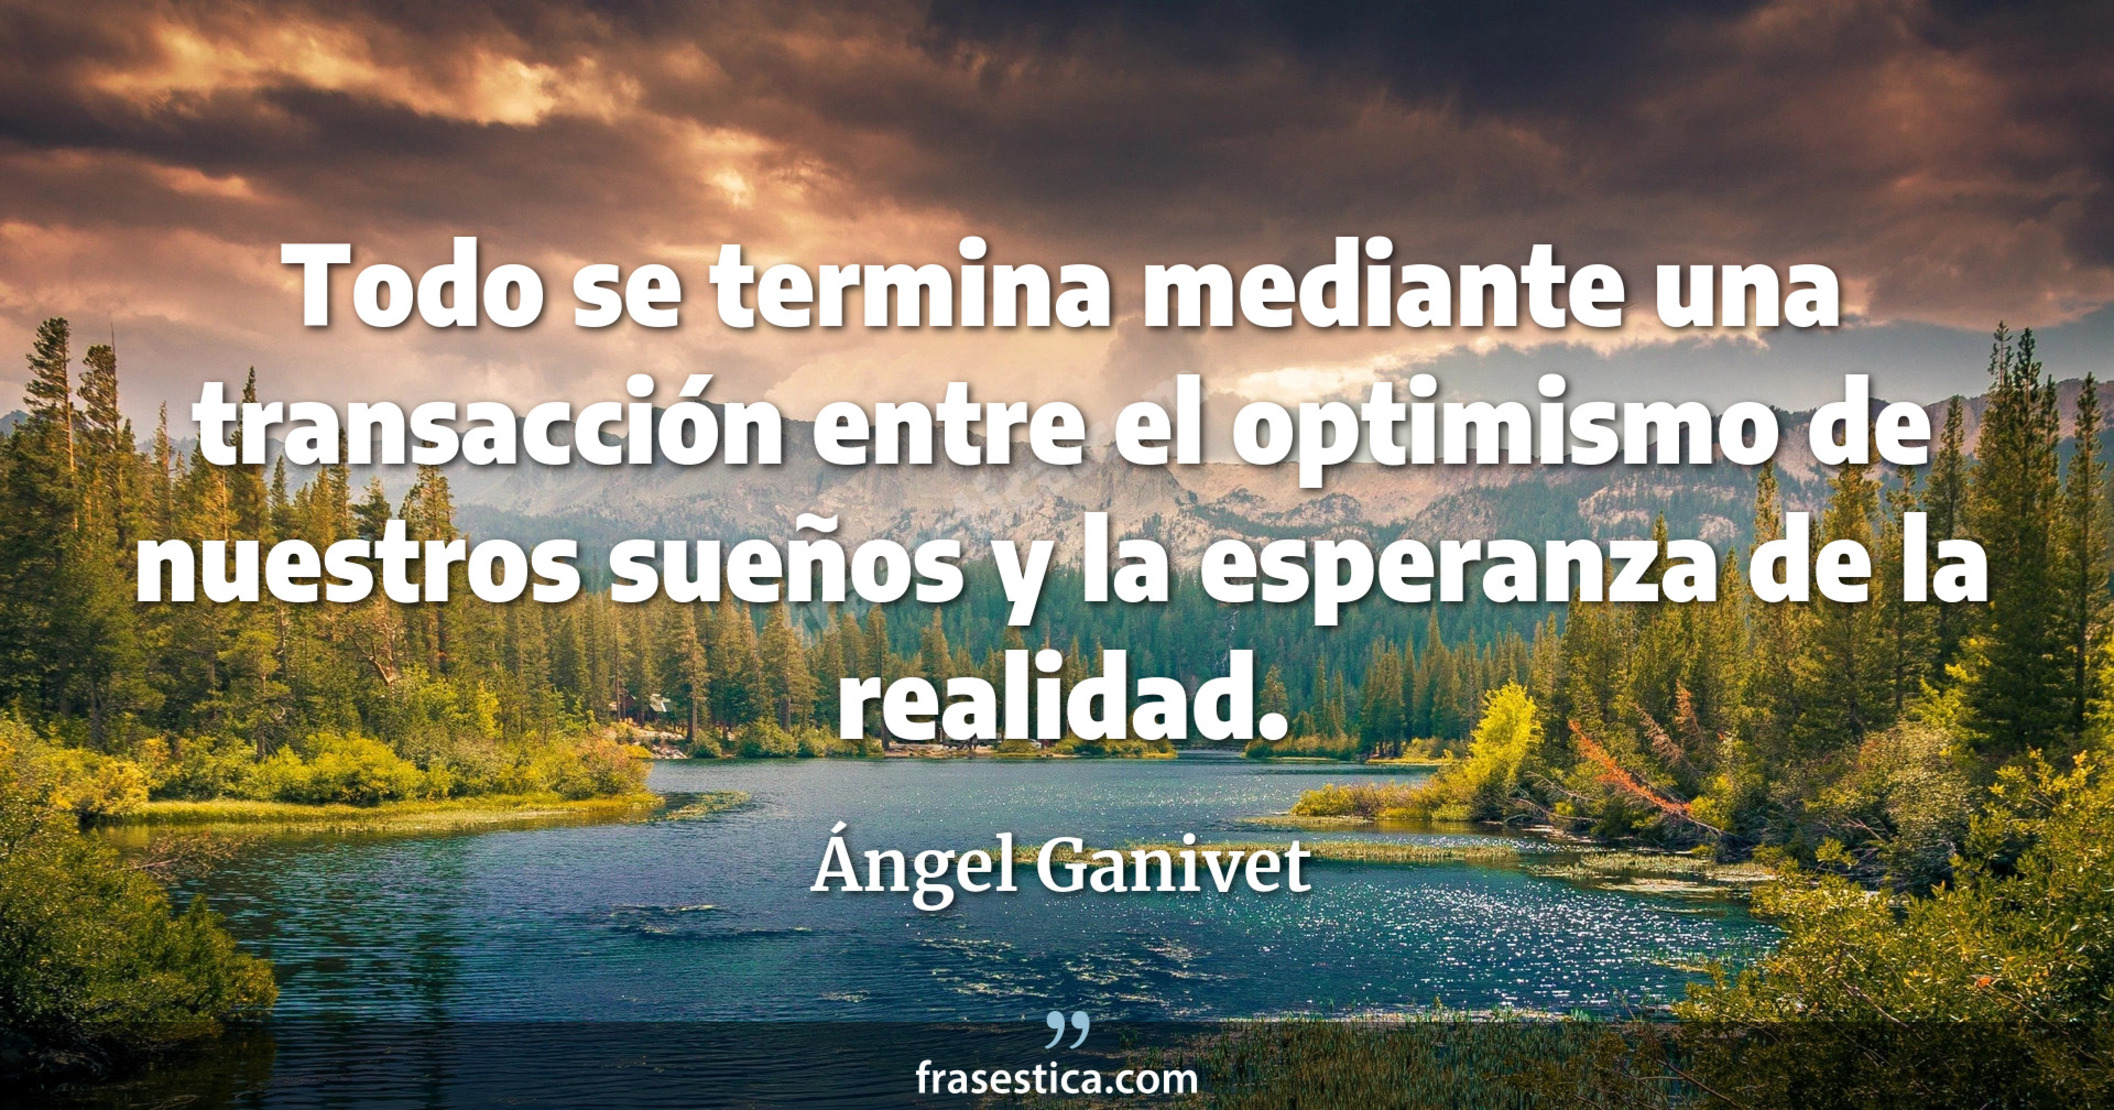 Todo se termina mediante una transacción entre el optimismo de nuestros sueños y la esperanza de la realidad. - Ángel Ganivet